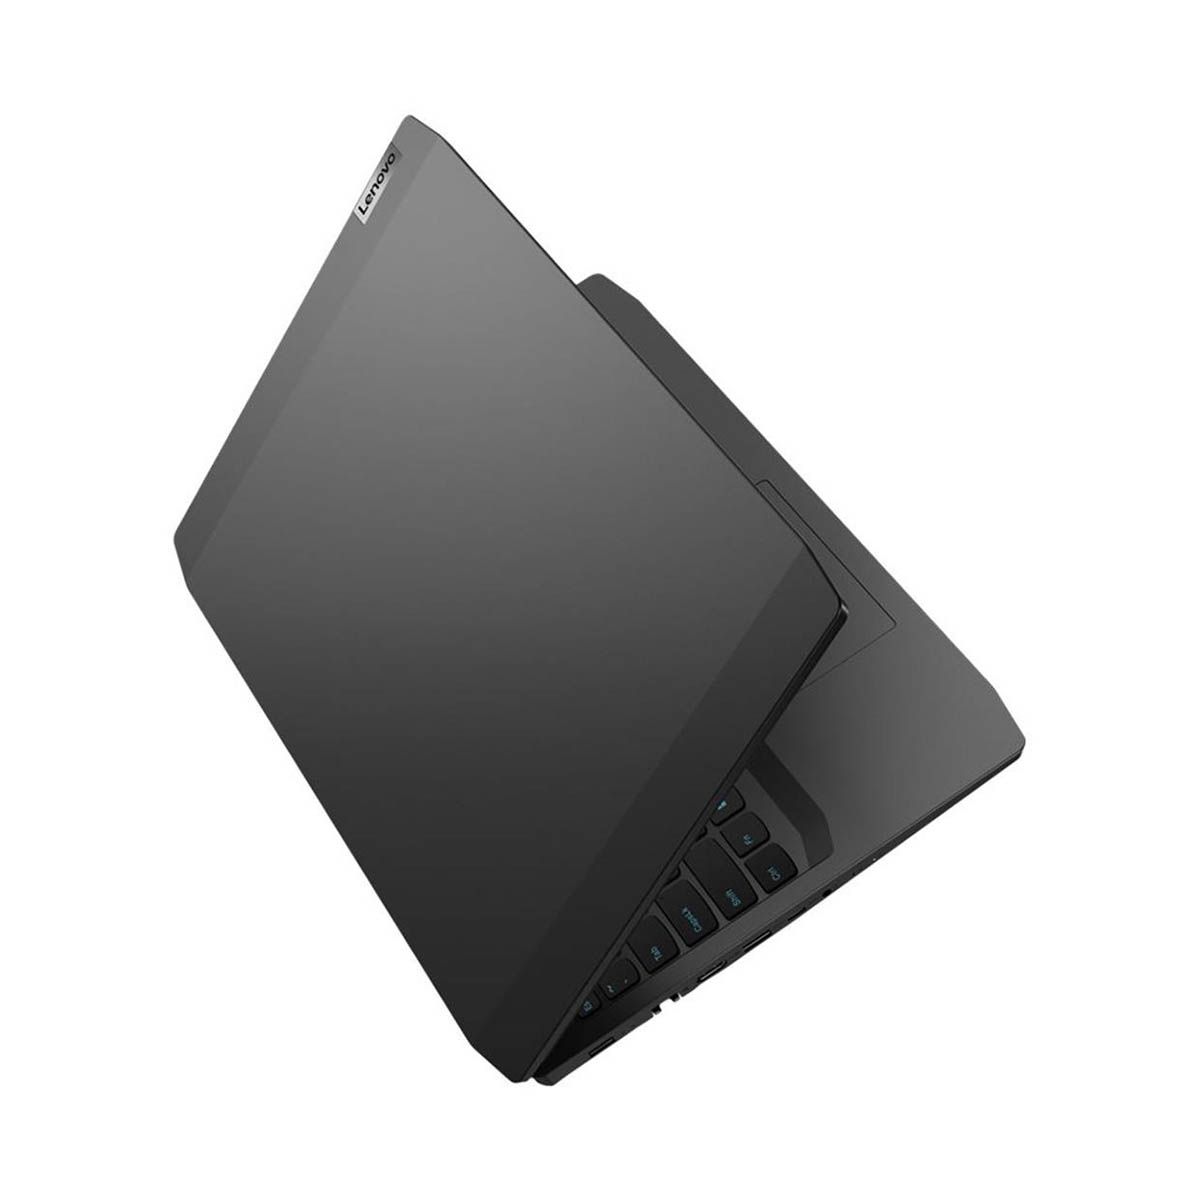 Lenovo IdeaPad 3 15.6" Gaming Laptop i5-10300H 8GB 256GB GTX 1650 Ti